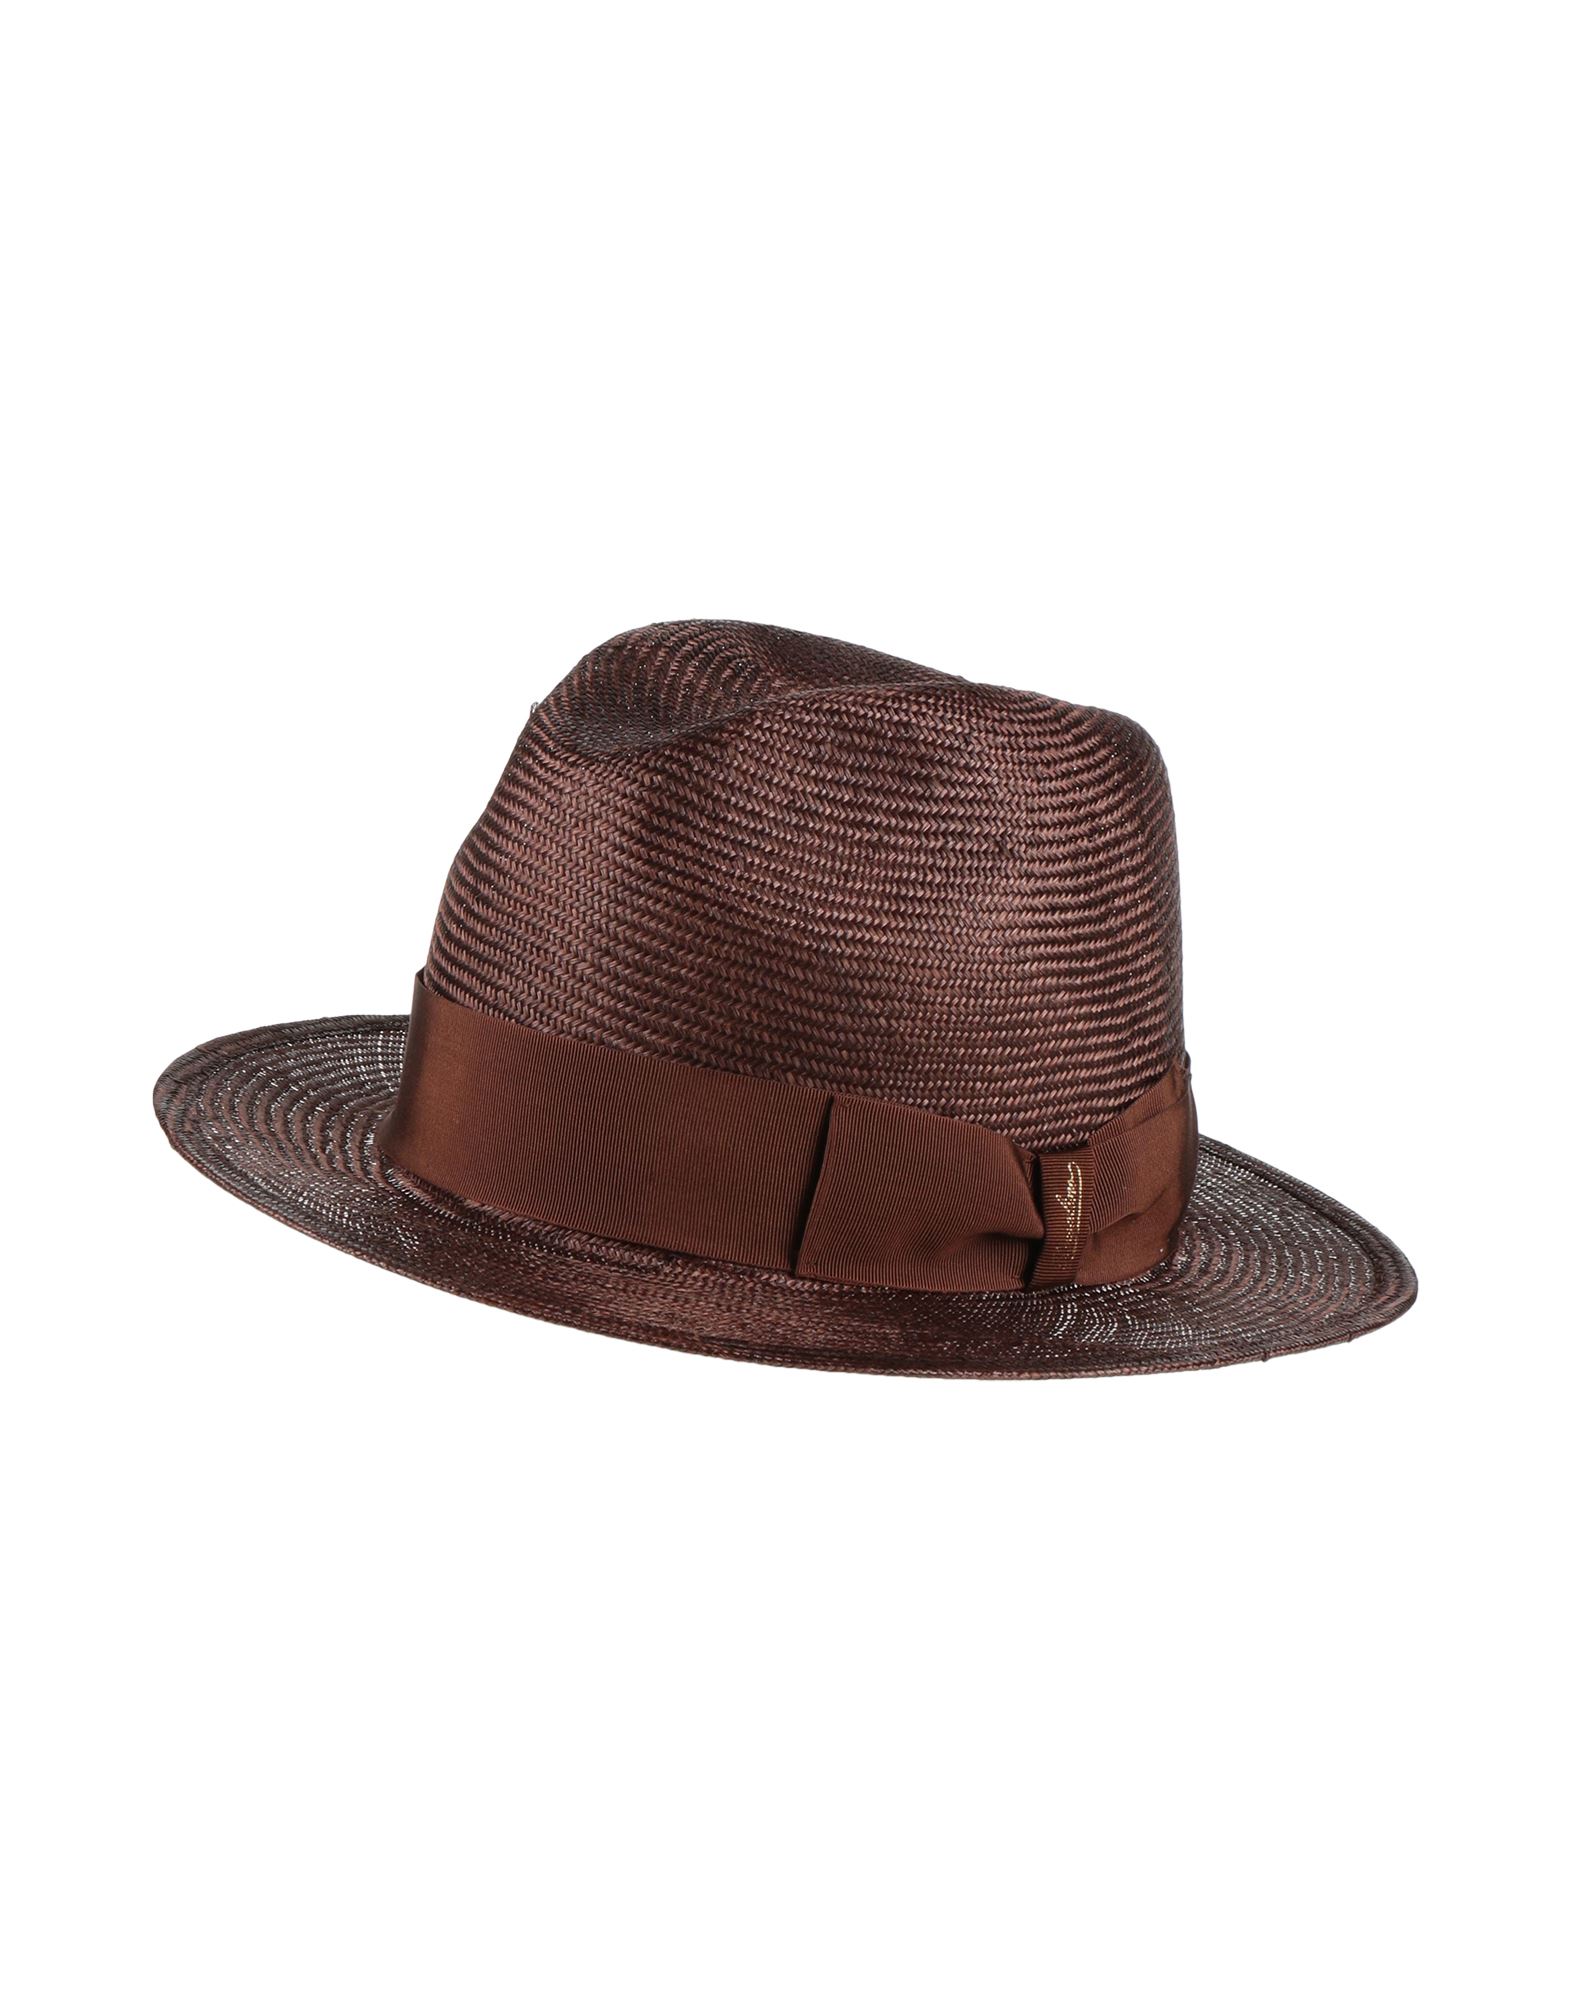 ボルサリーノ(Borsalino) メンズ帽子・キャップ | 通販・人気